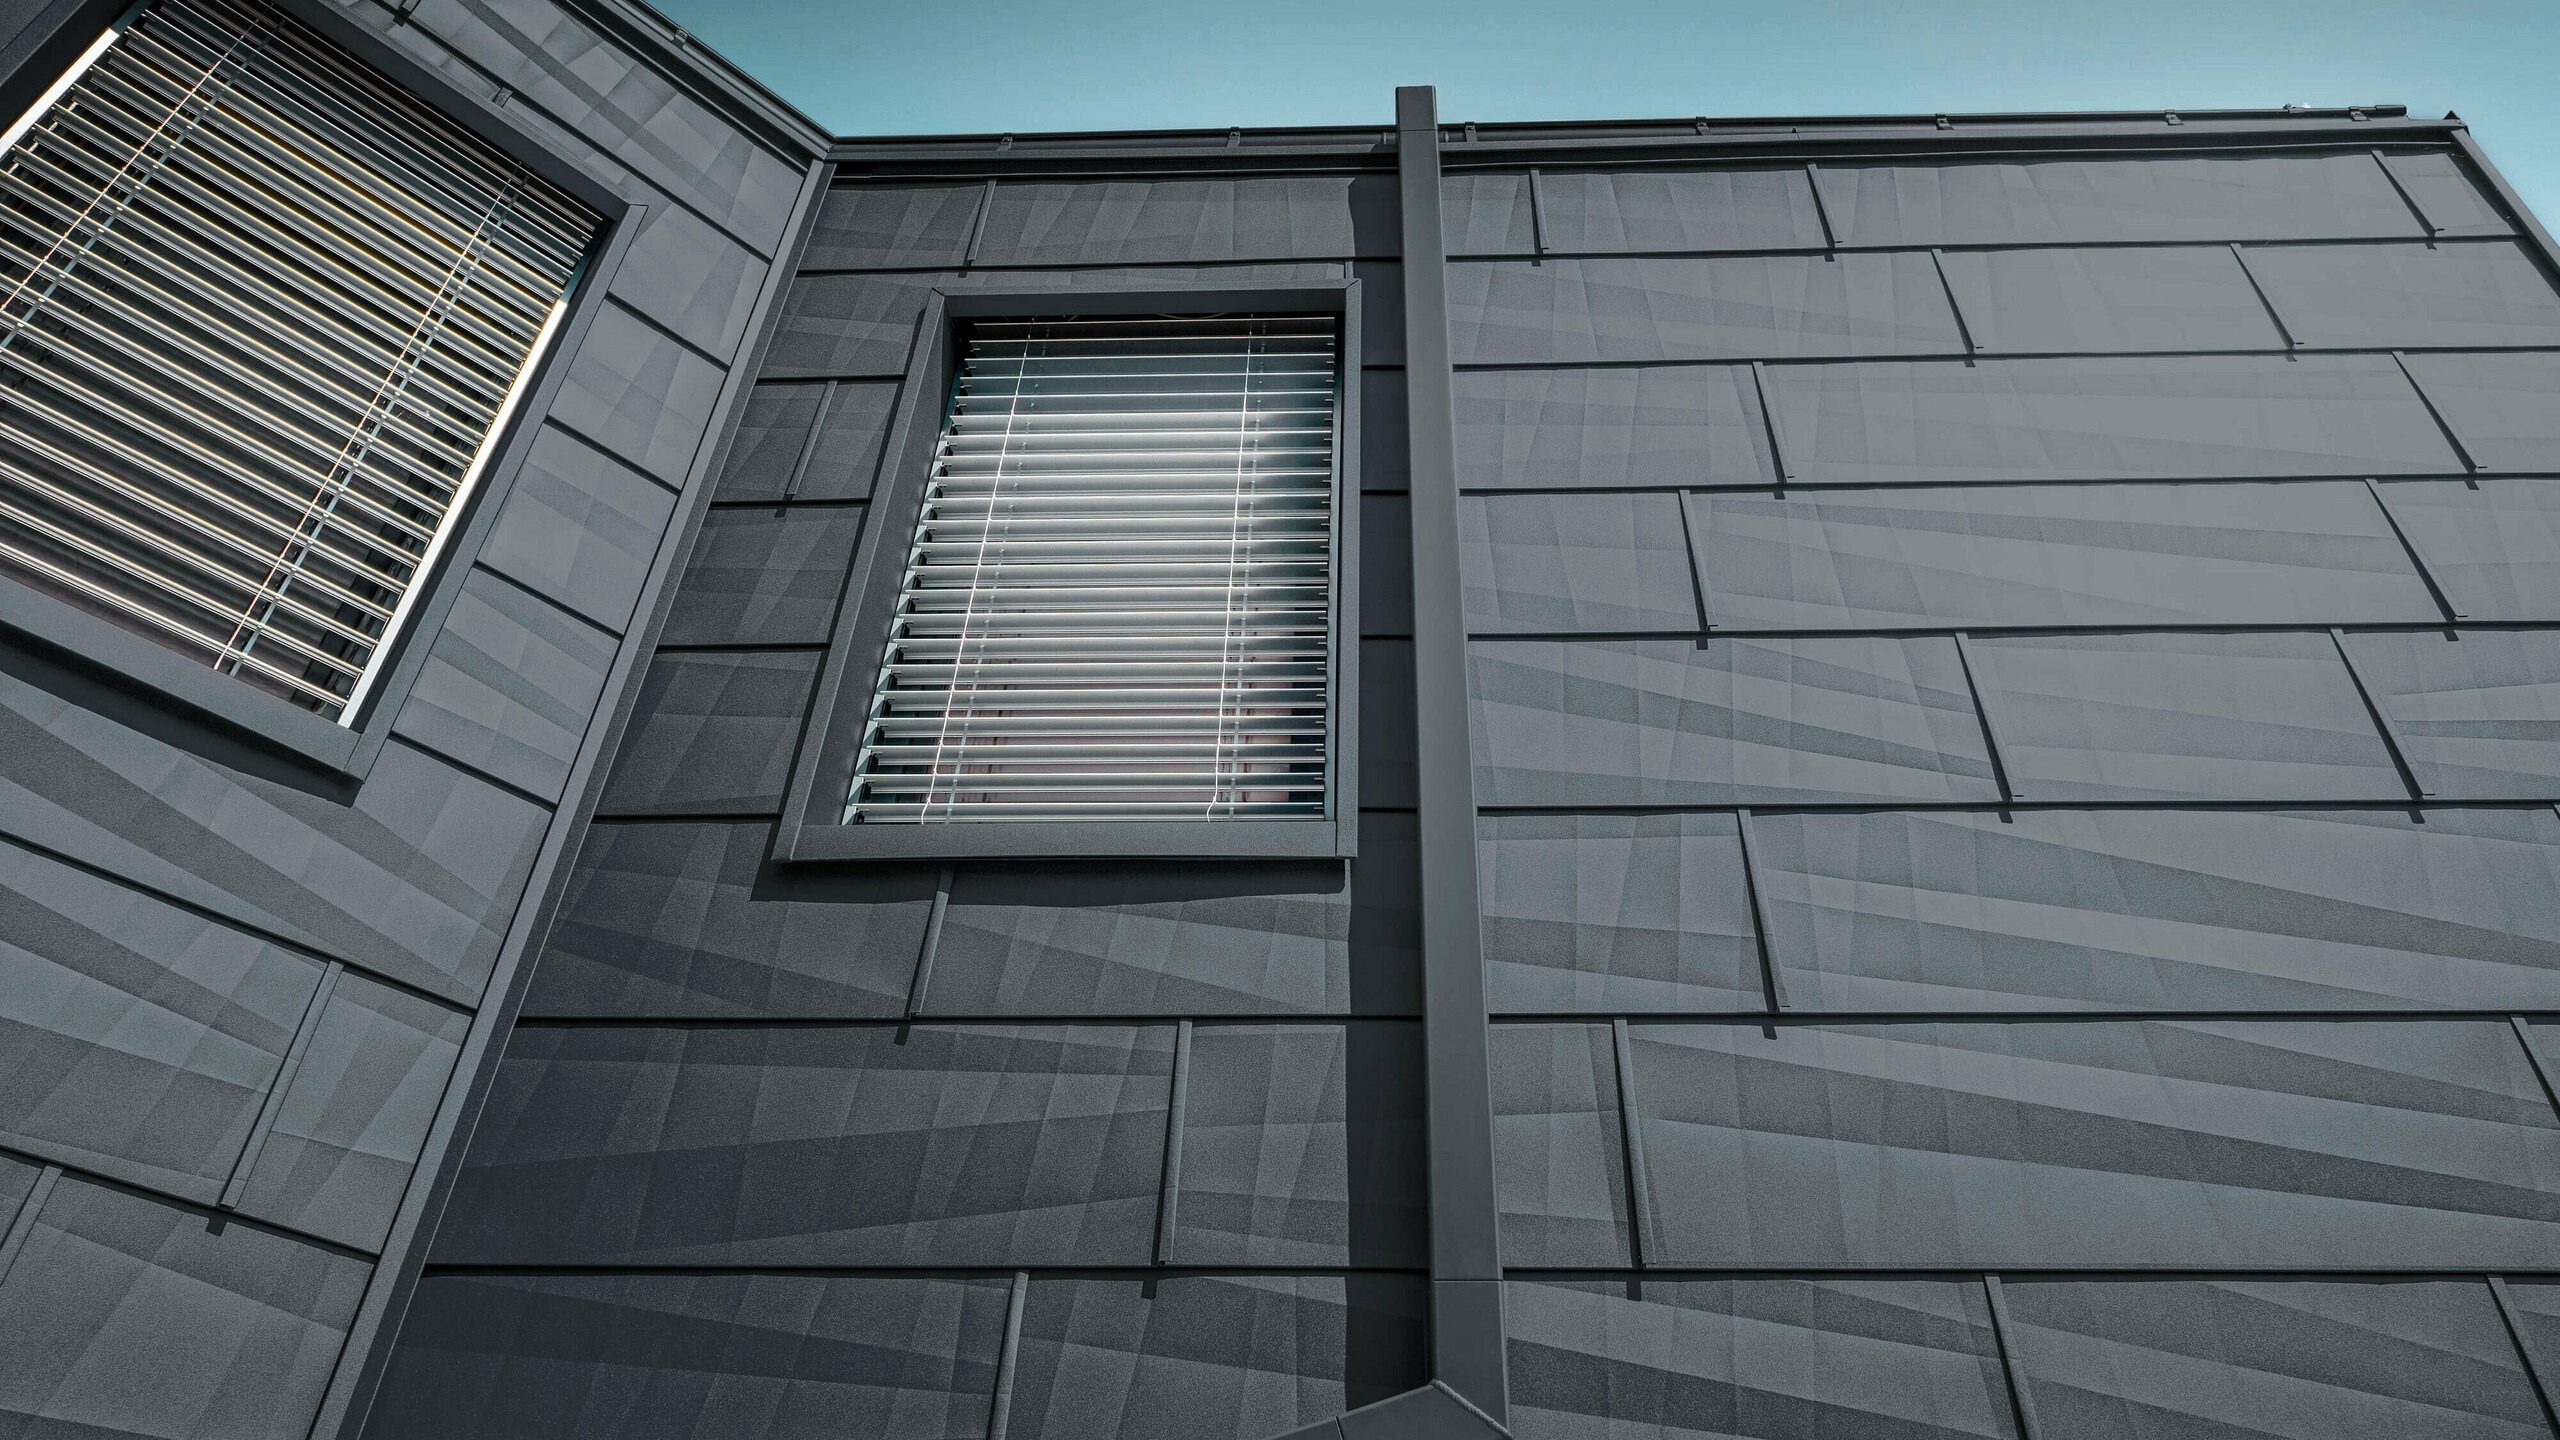 Fasade obložene PREFA fasadnim panelom FX.12 u antracit boji, aluminijski paneli na fasadi s kutnom odvodnom cijevi, kvadratnom cijevi, u antracit boji od tvrtke PREFA.